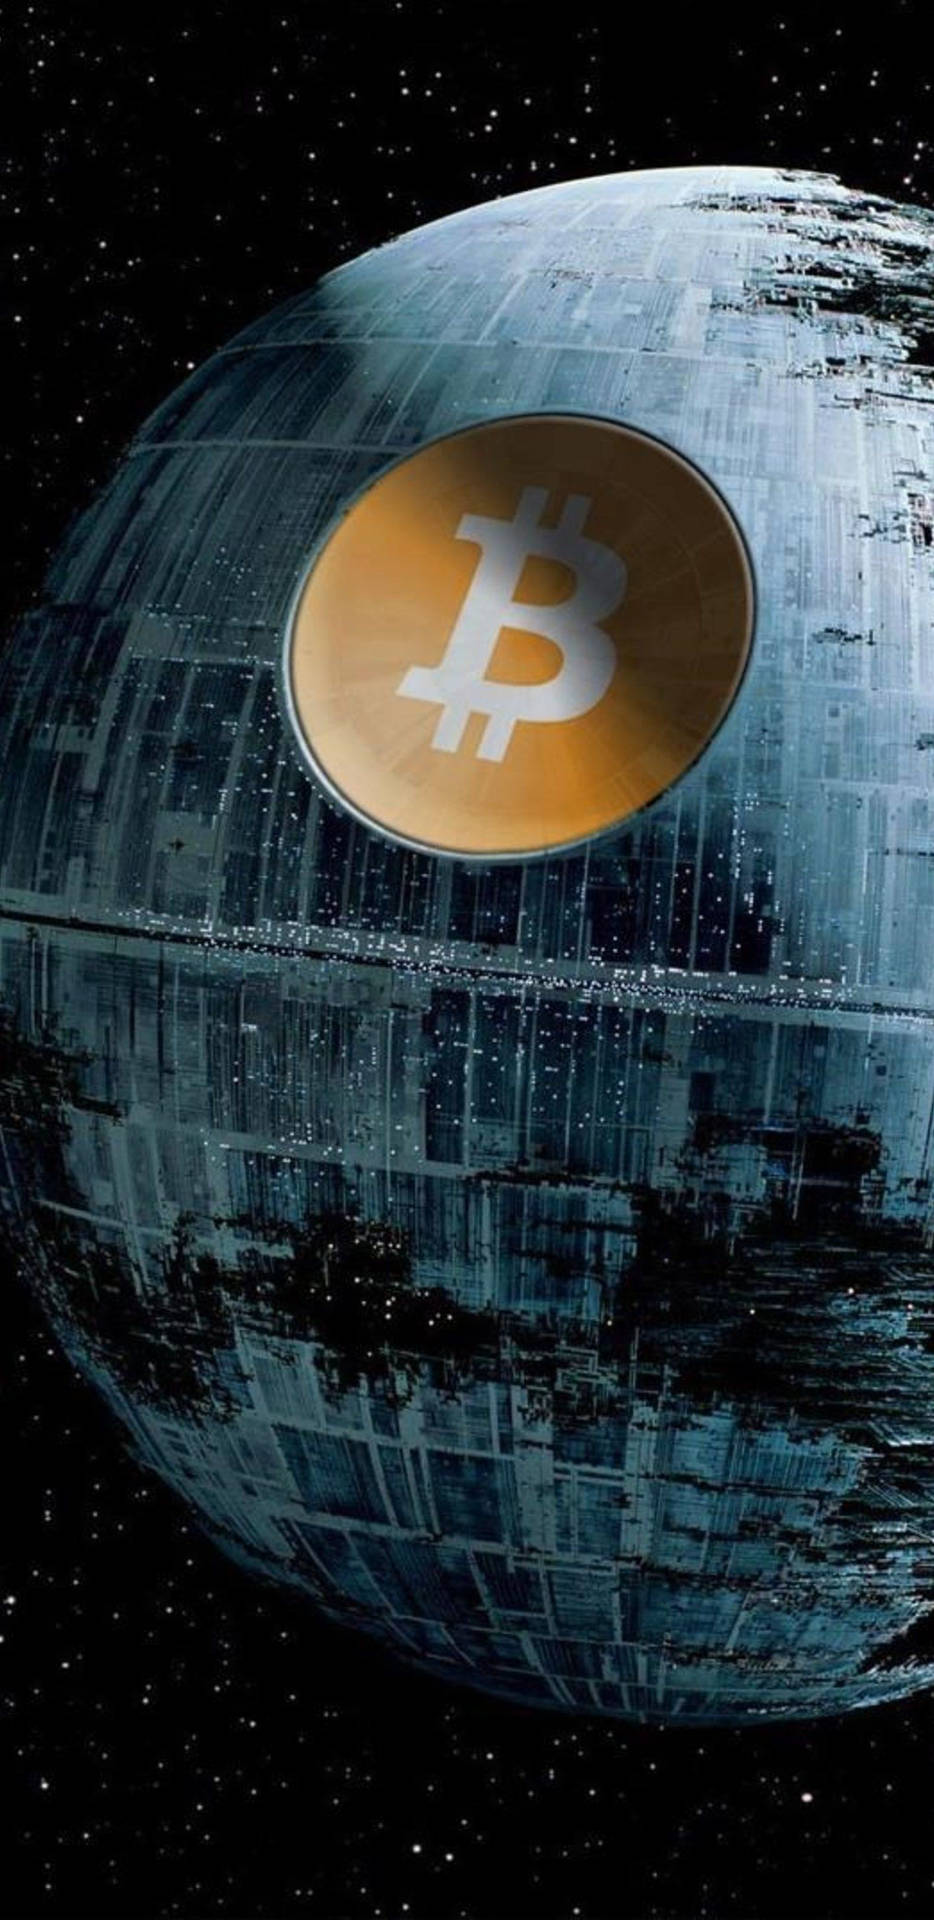 Join Blockchain’s Bitcoin Revolution